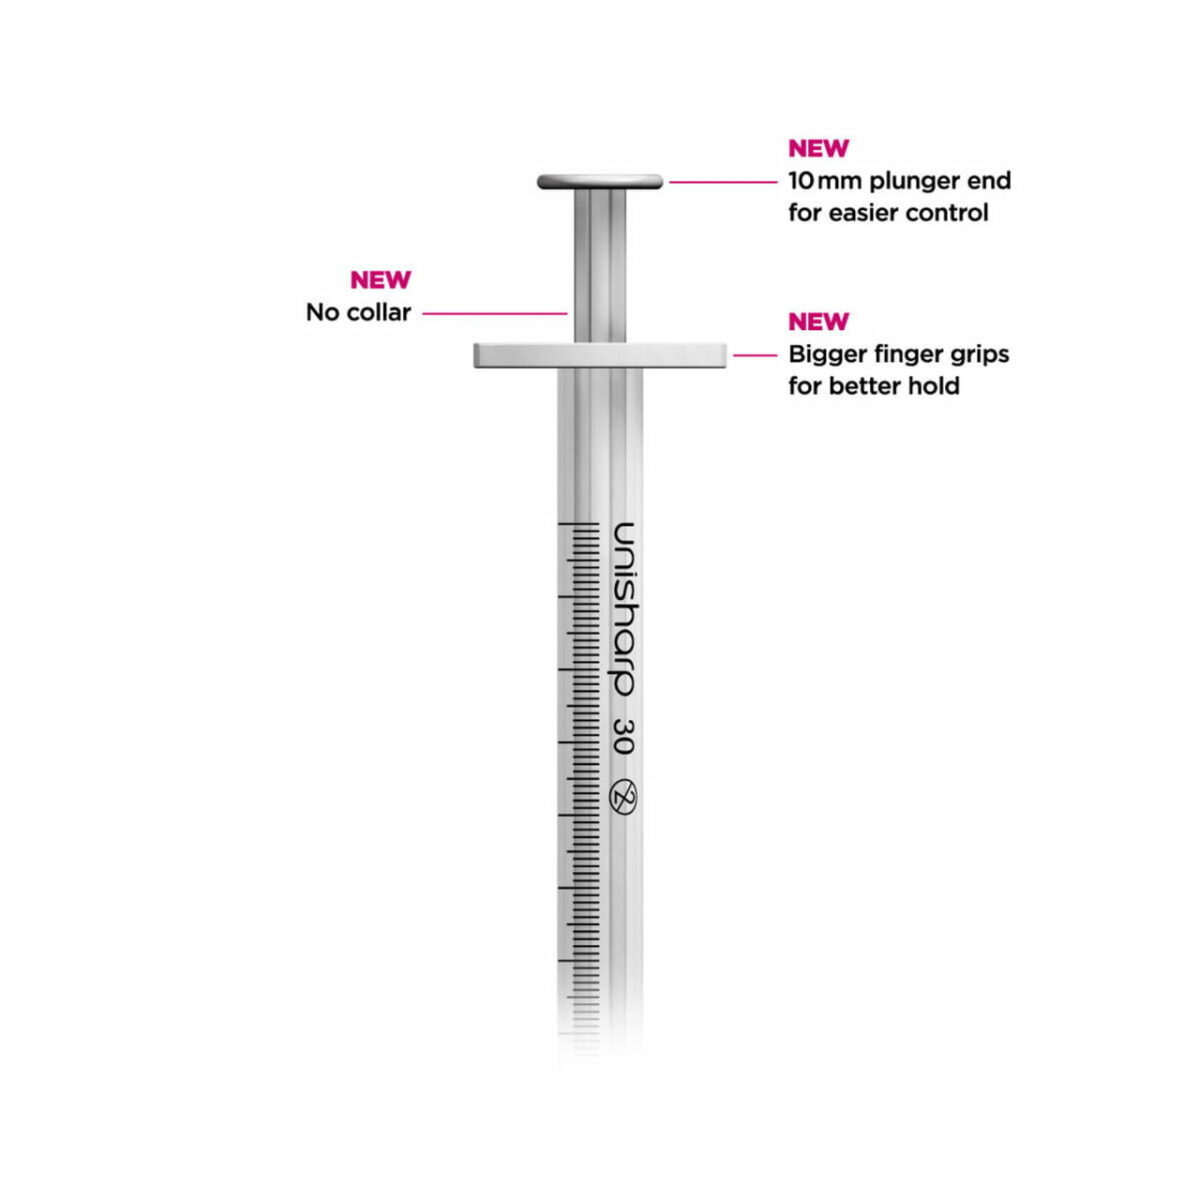 unisharp unisharp 1ml 30g 12mm fixed needle syringe 85793 1 59719.1674791649.1280.1280 28466.1675384743.1280.1280 58736